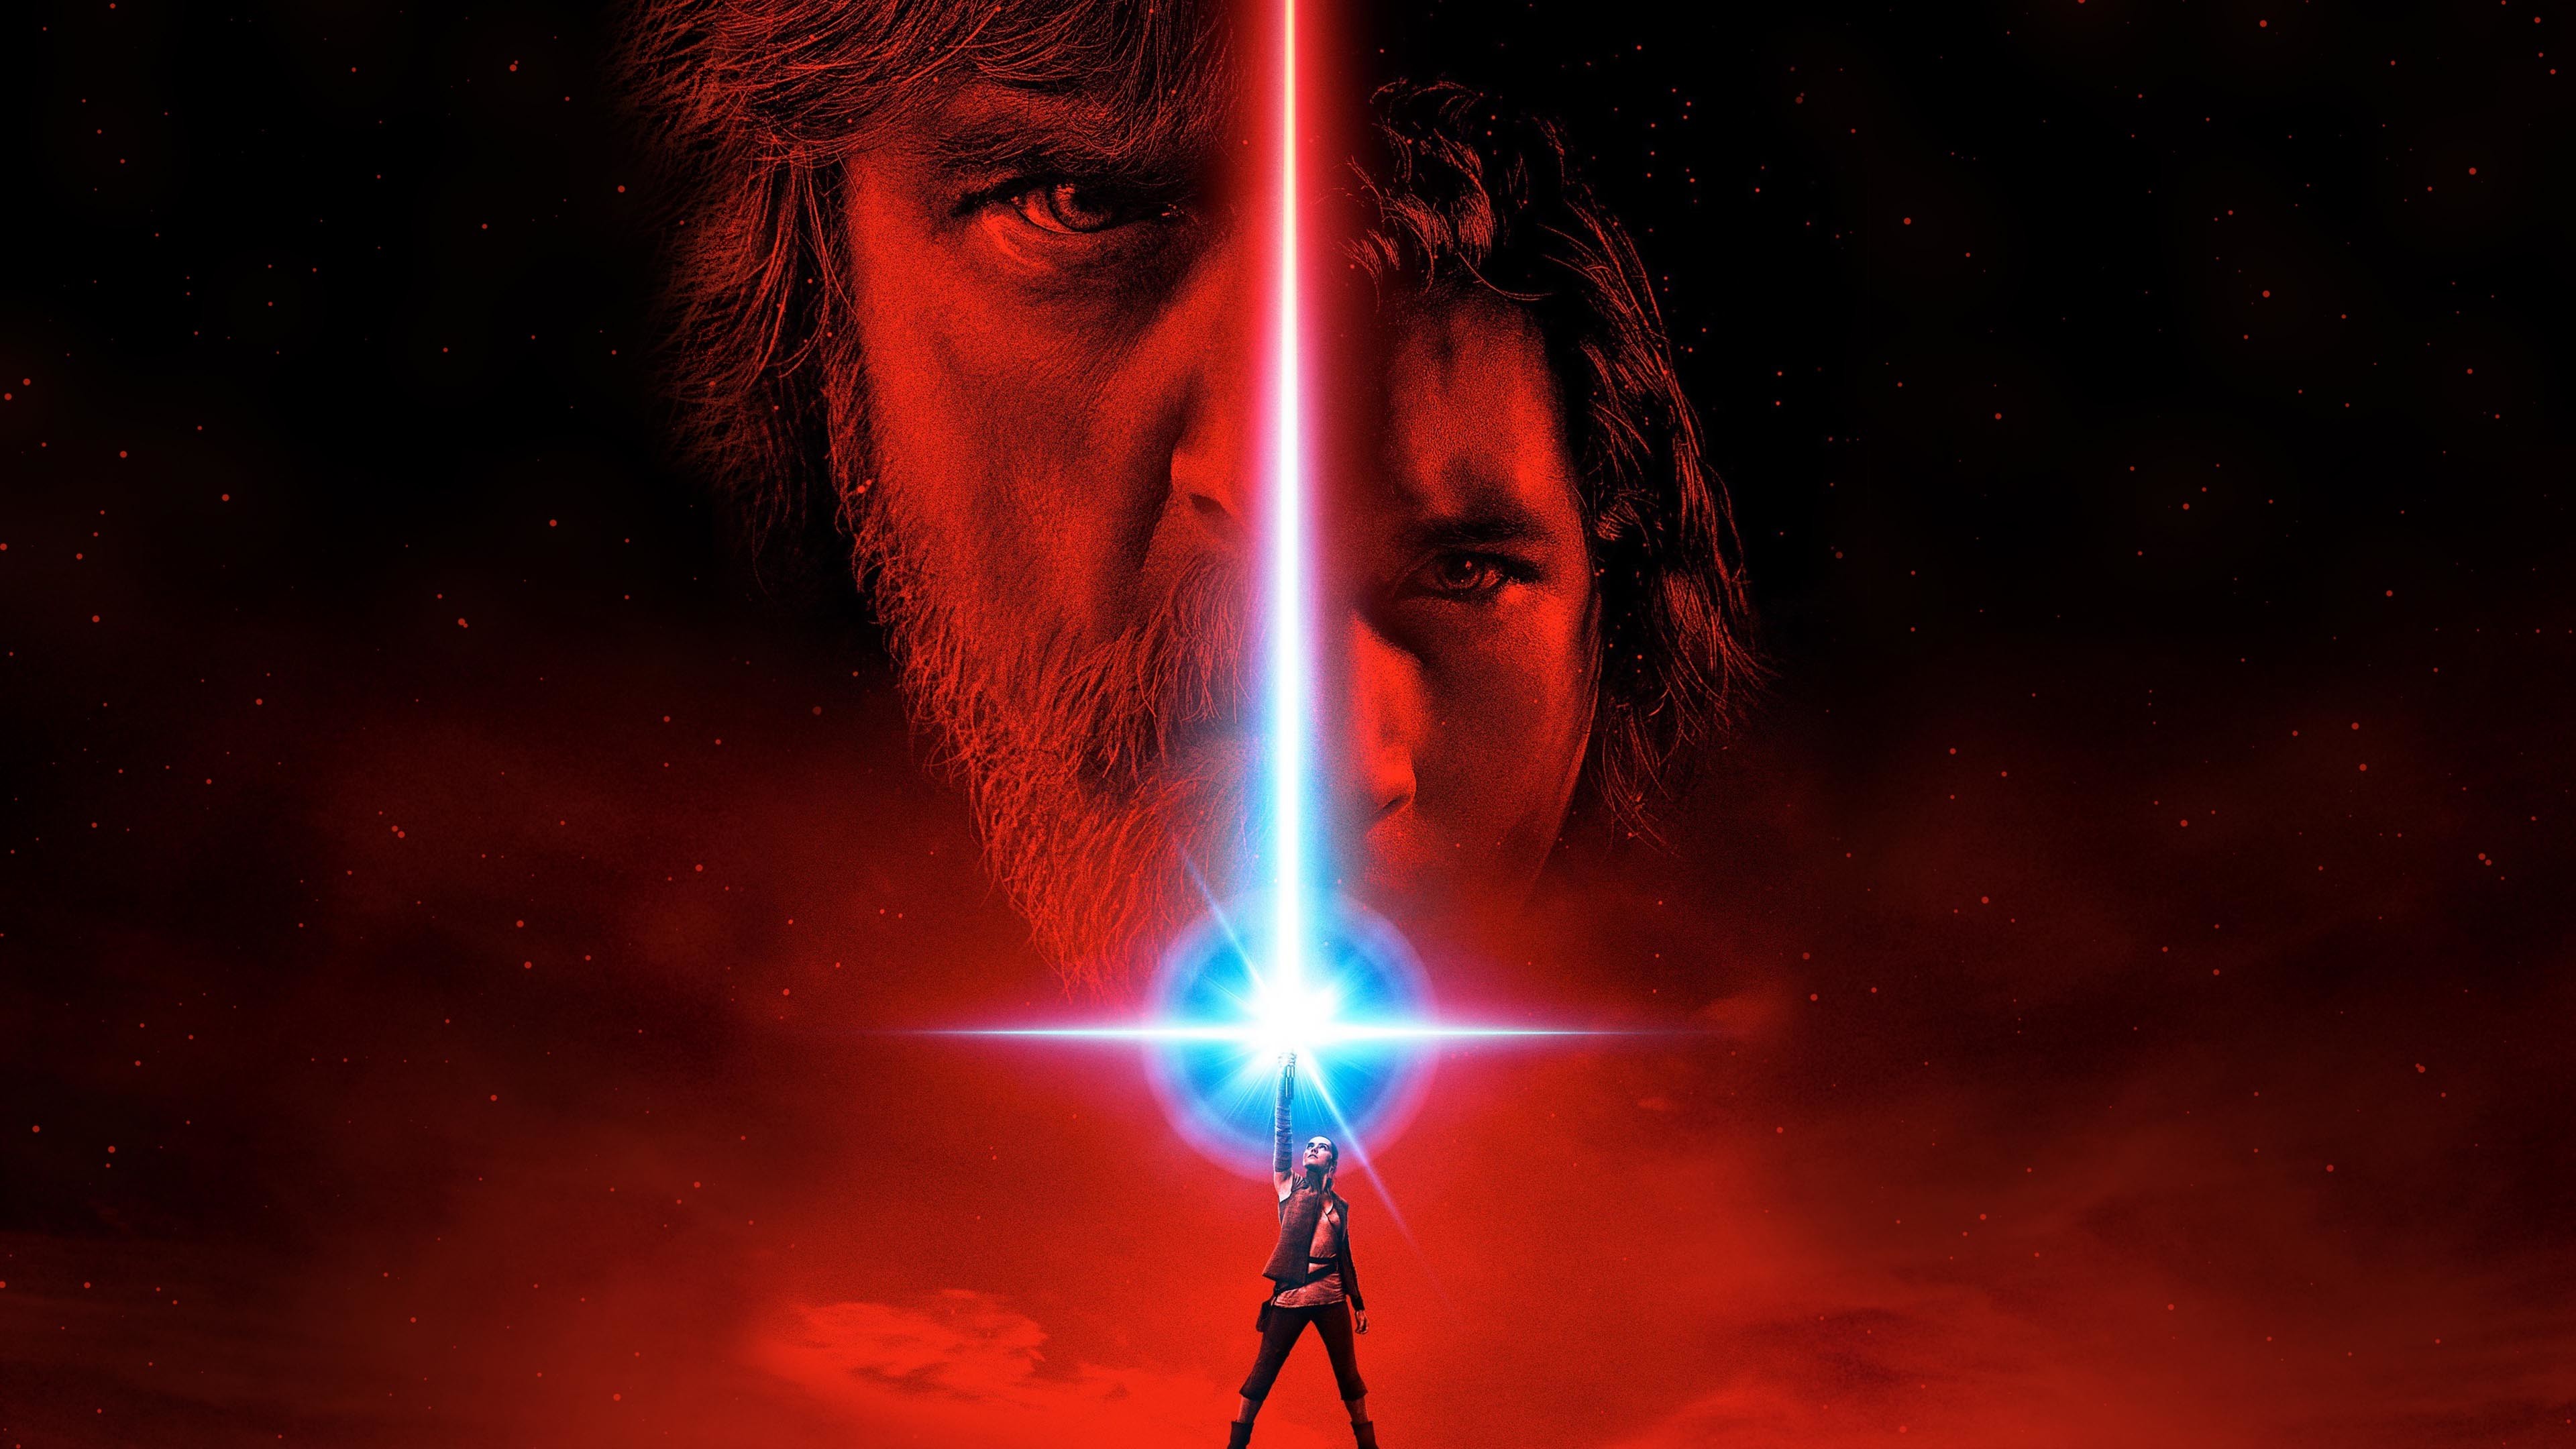 3840x2160 Star Wars: The Last Jedi - Movie Poster 2017  wallpaper